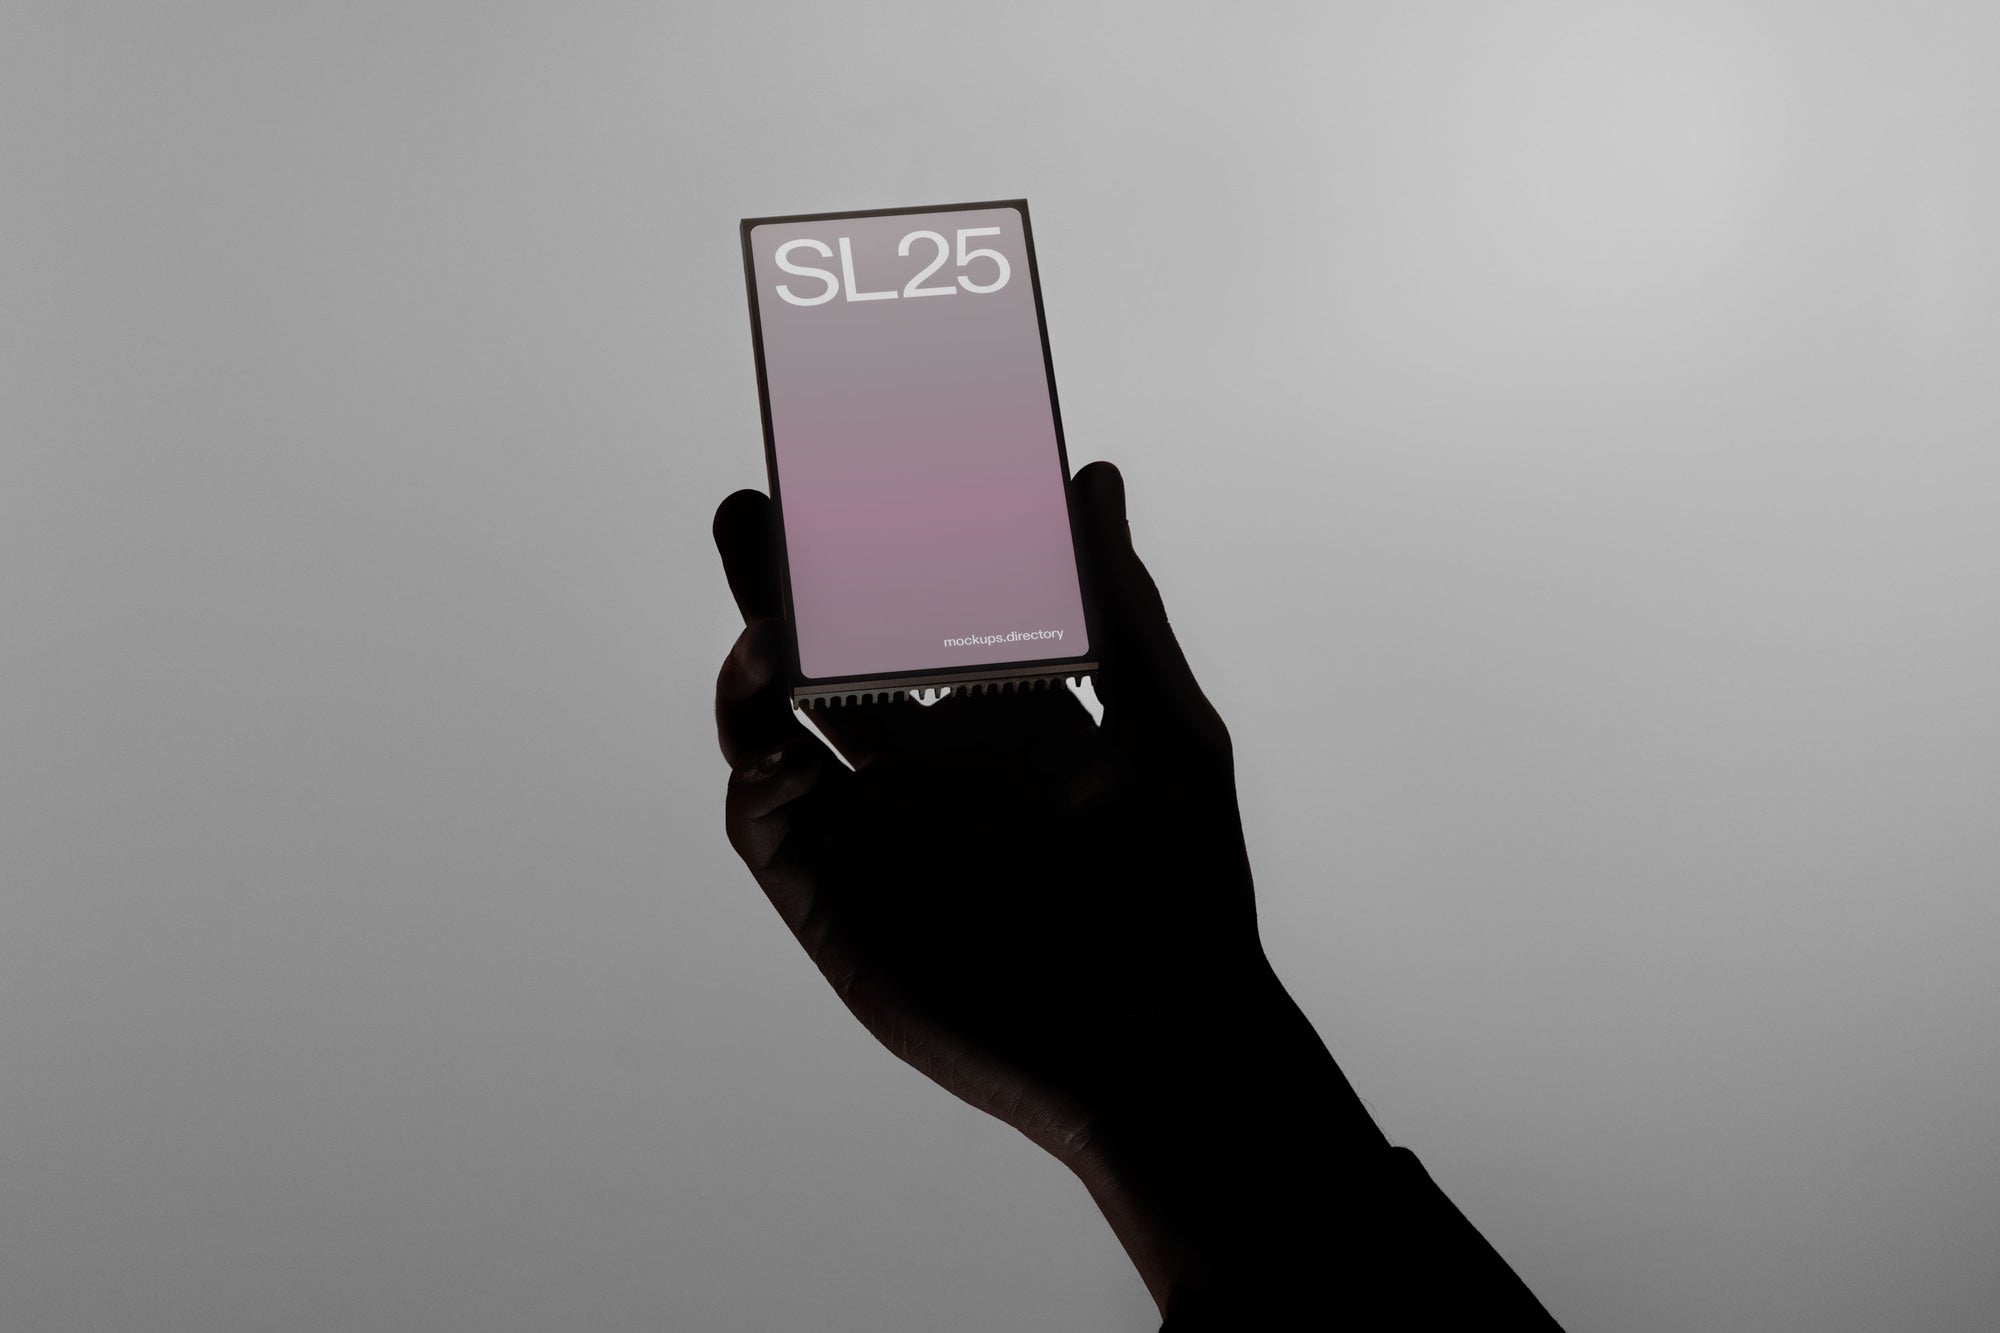 SL25 — Neural Phone